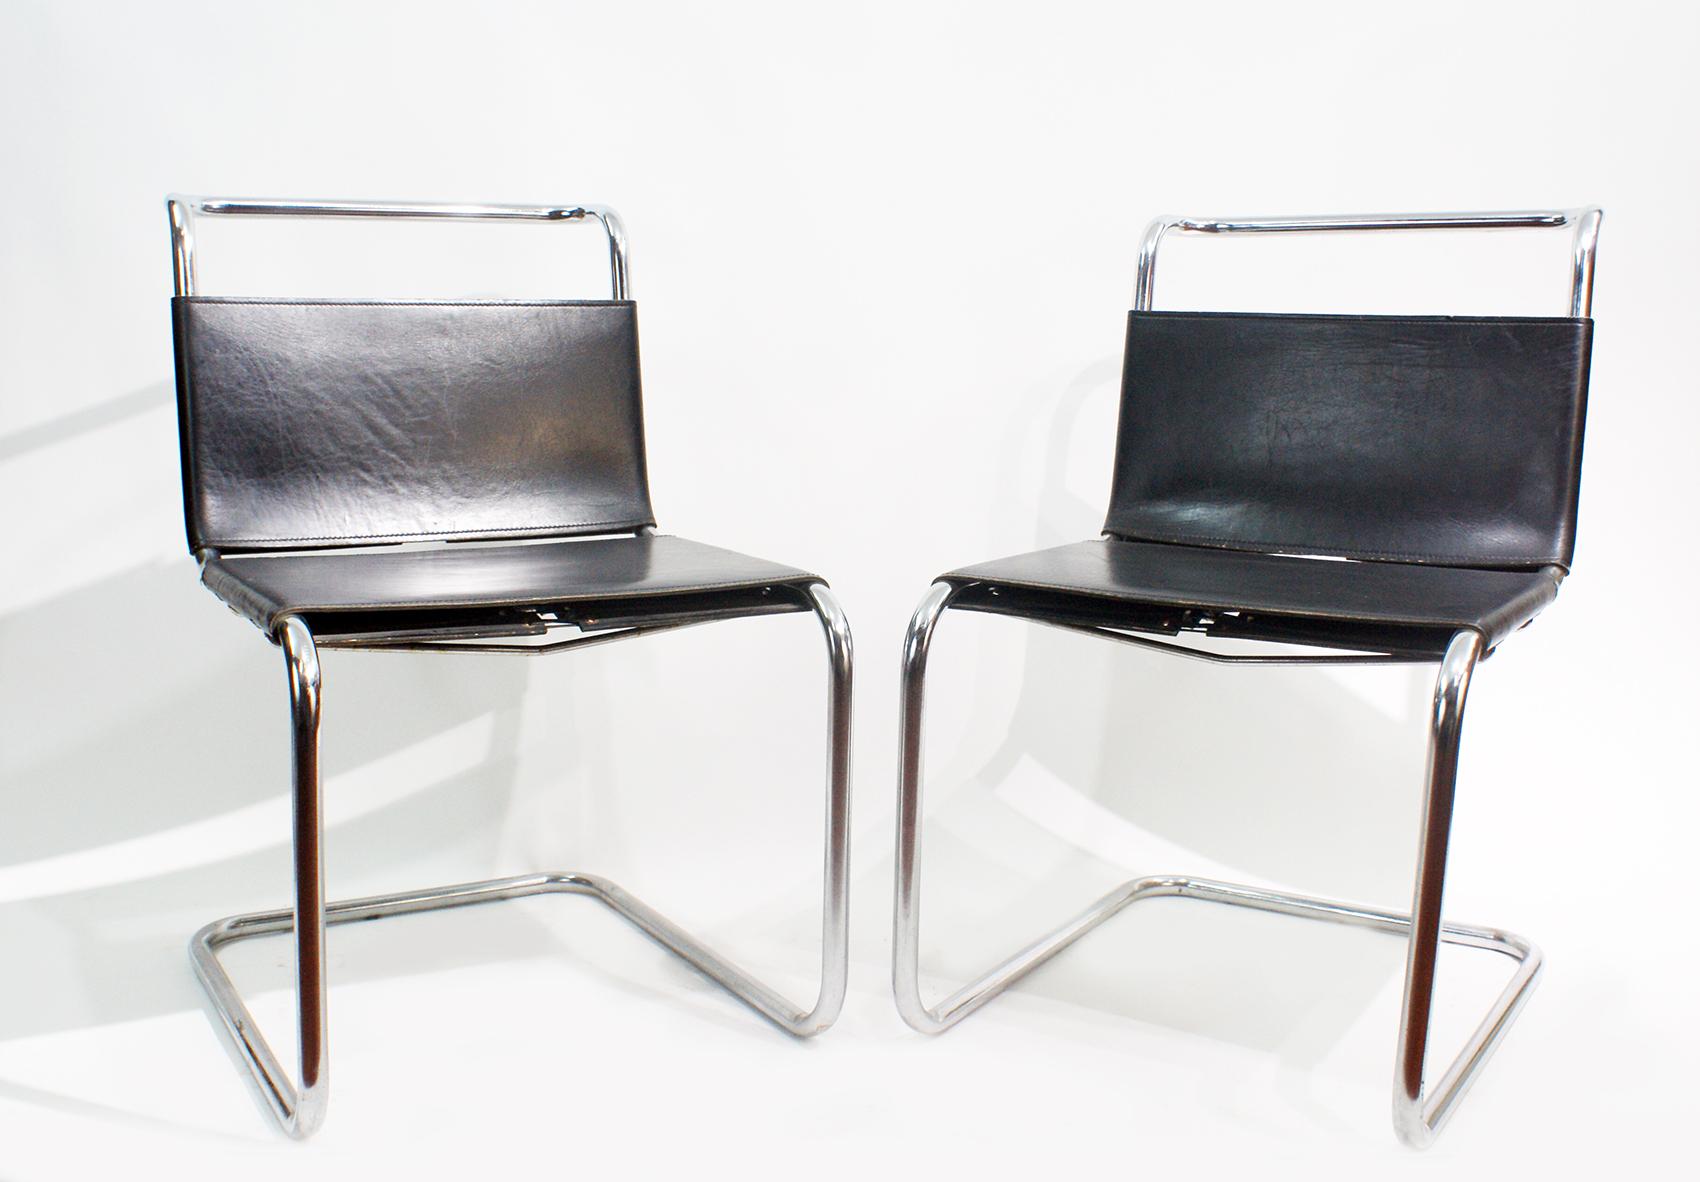 Ein Paar alte Mies van der Rohe Freischwinger, Modell MR 10, hergestellt von Knoll International
Der Stuhl besteht aus schwarzem Gürtelleder, das als Bespannung für die Rückenlehne und den Sitz verwendet wird, sowie aus verchromtem